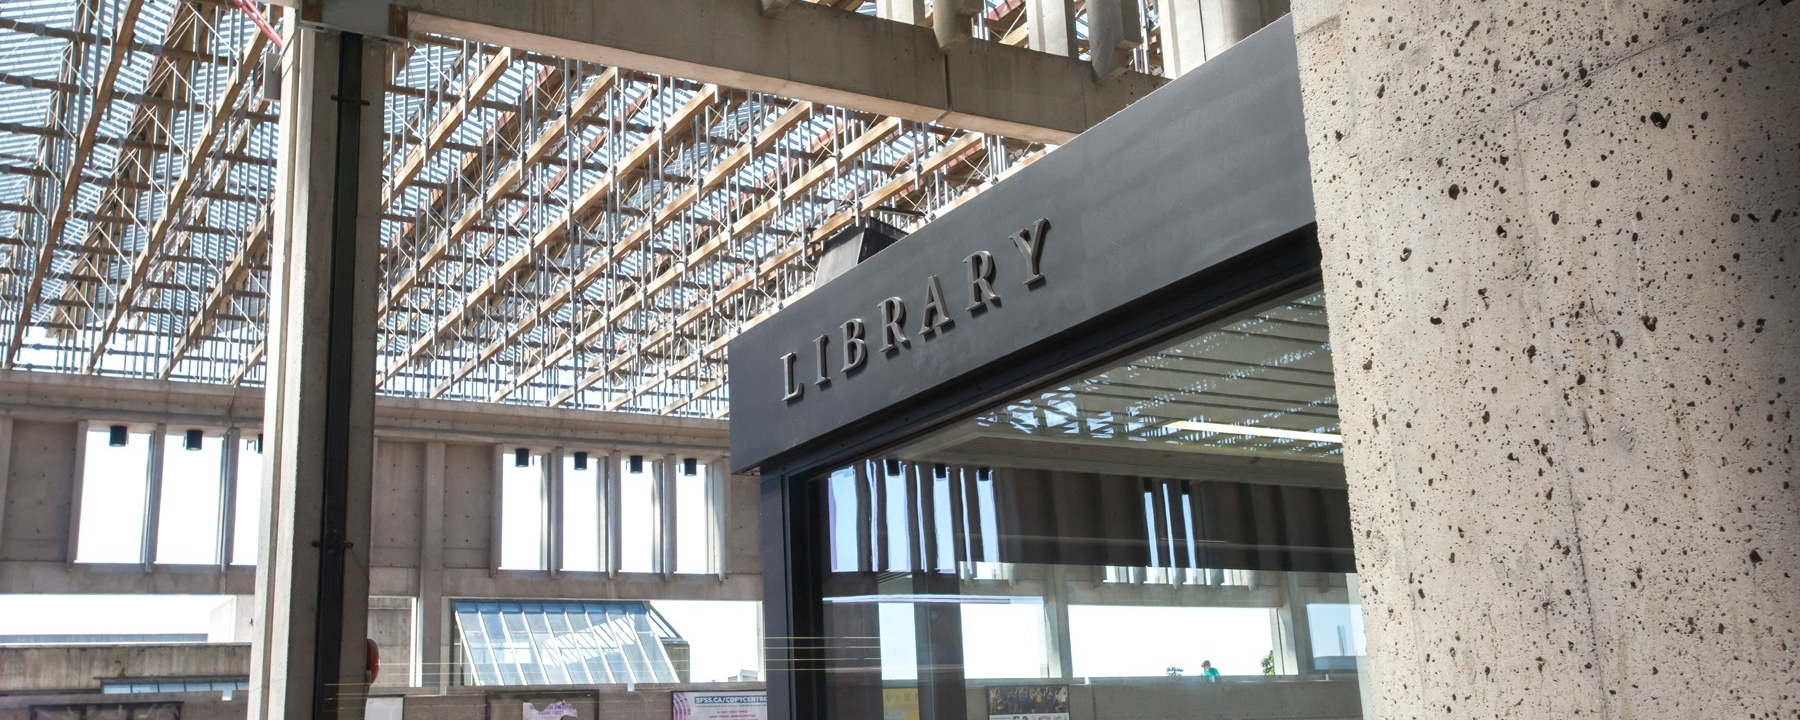 Library at SFU Surrey campus